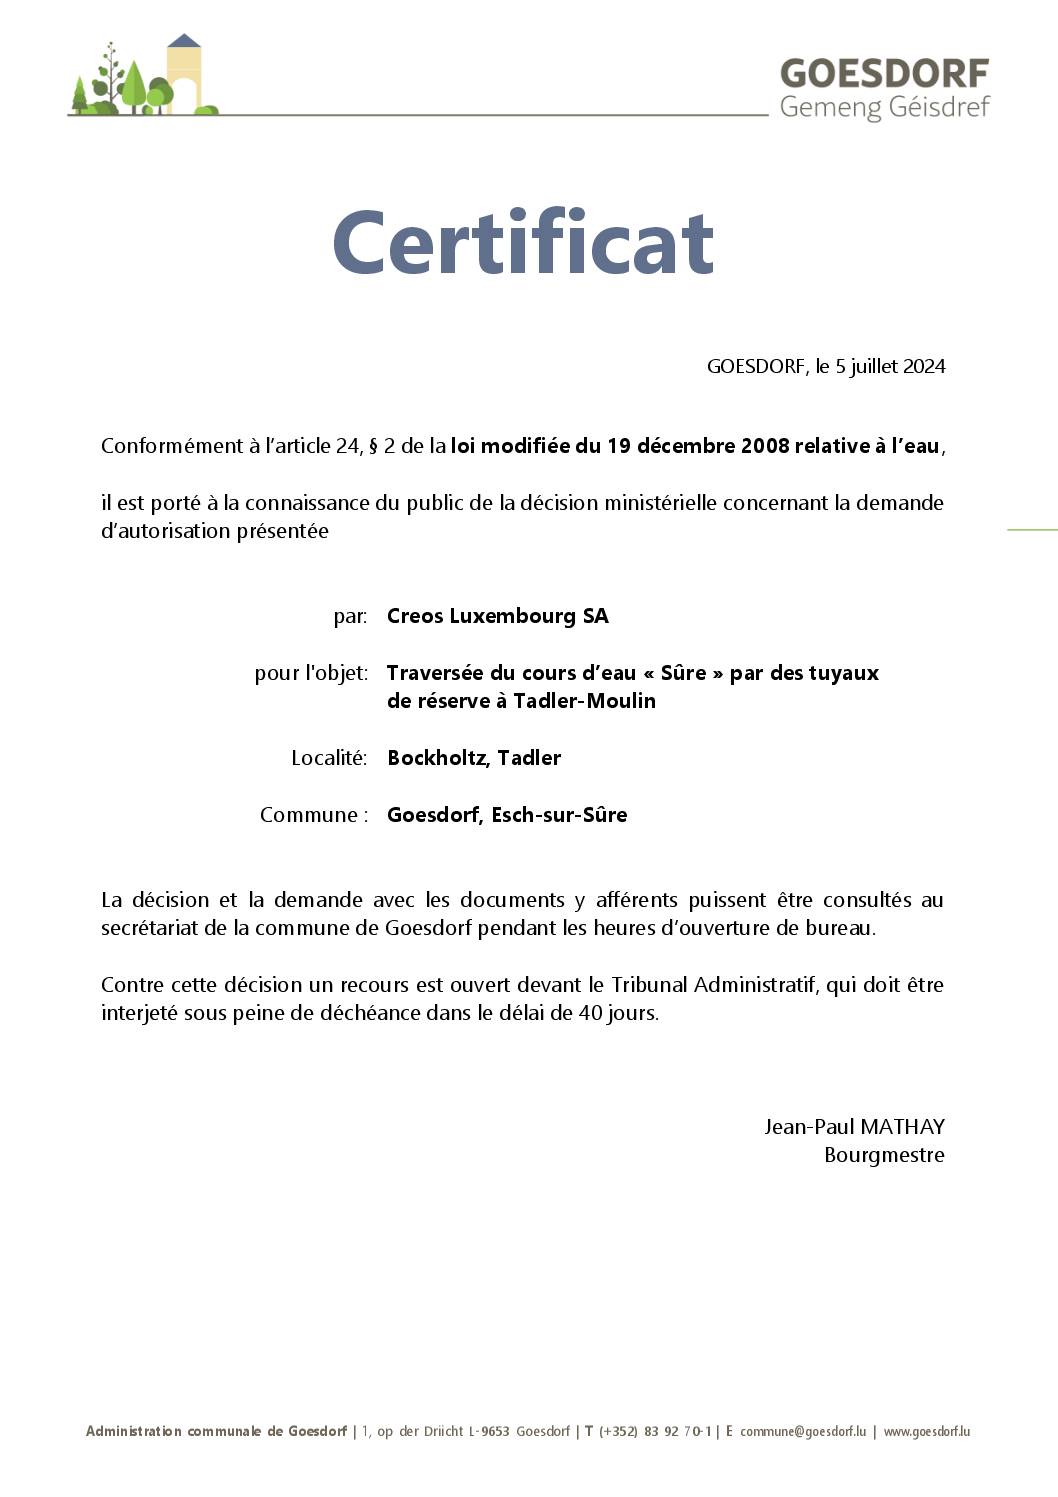 certificat décision ministérielle, art. 24 § 2 de la loi modifiée du 19 décembre 2018 relative à l'eau _Creos Luxembourg_05.07.2024